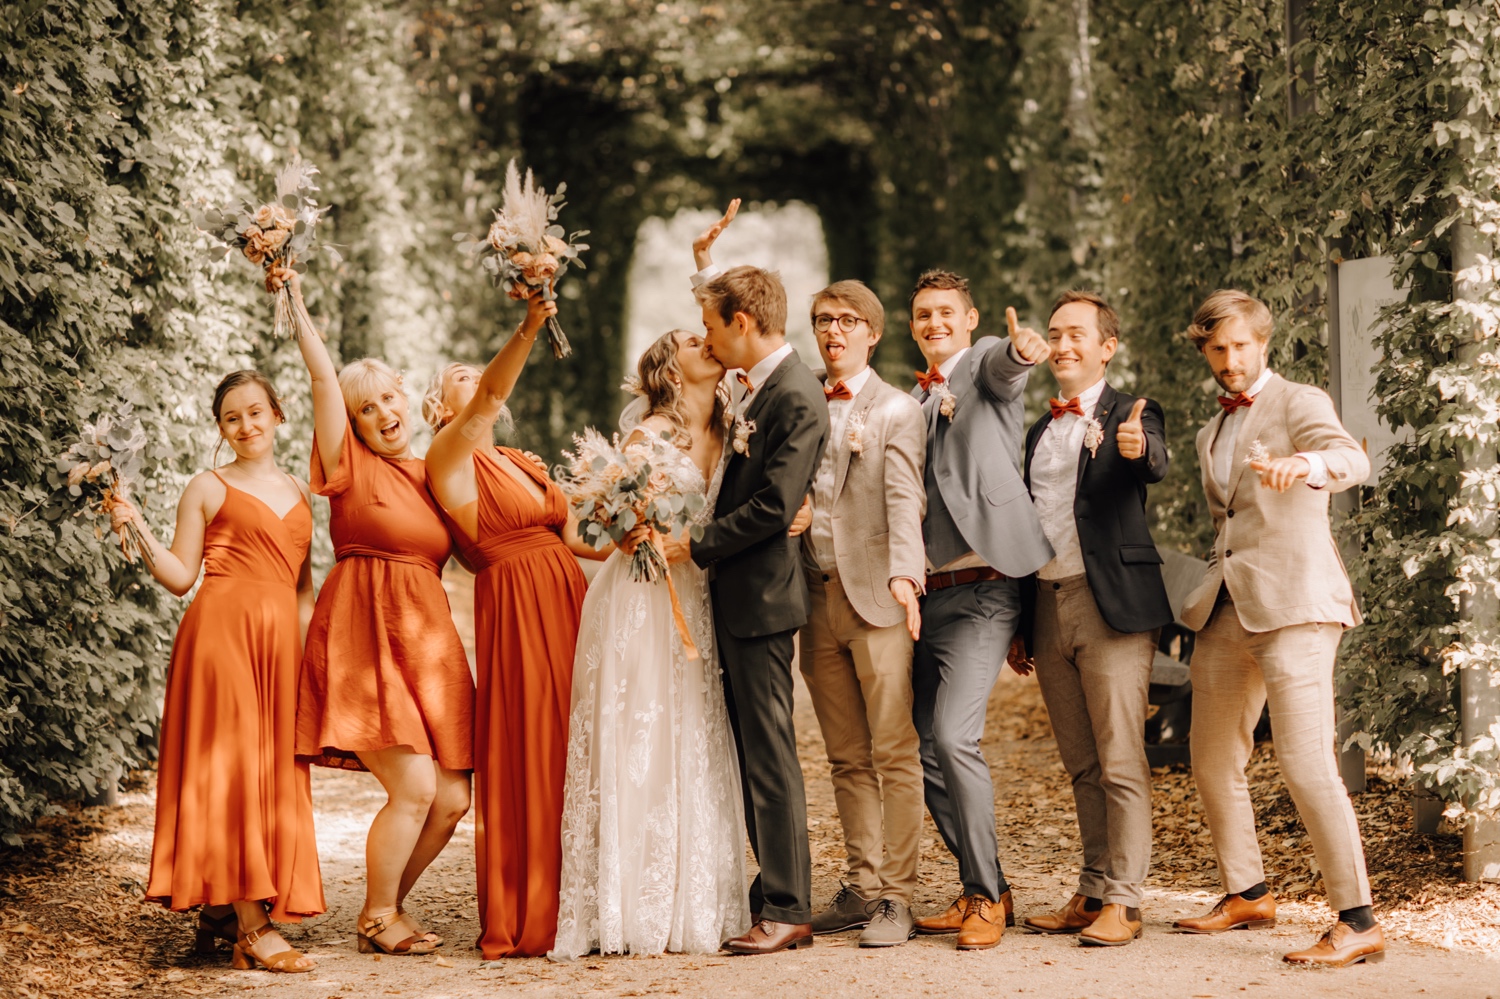 Huwelijksfotograaf Limburg - groepsfoto met de bruidsmeisjes en bruidsjonkers